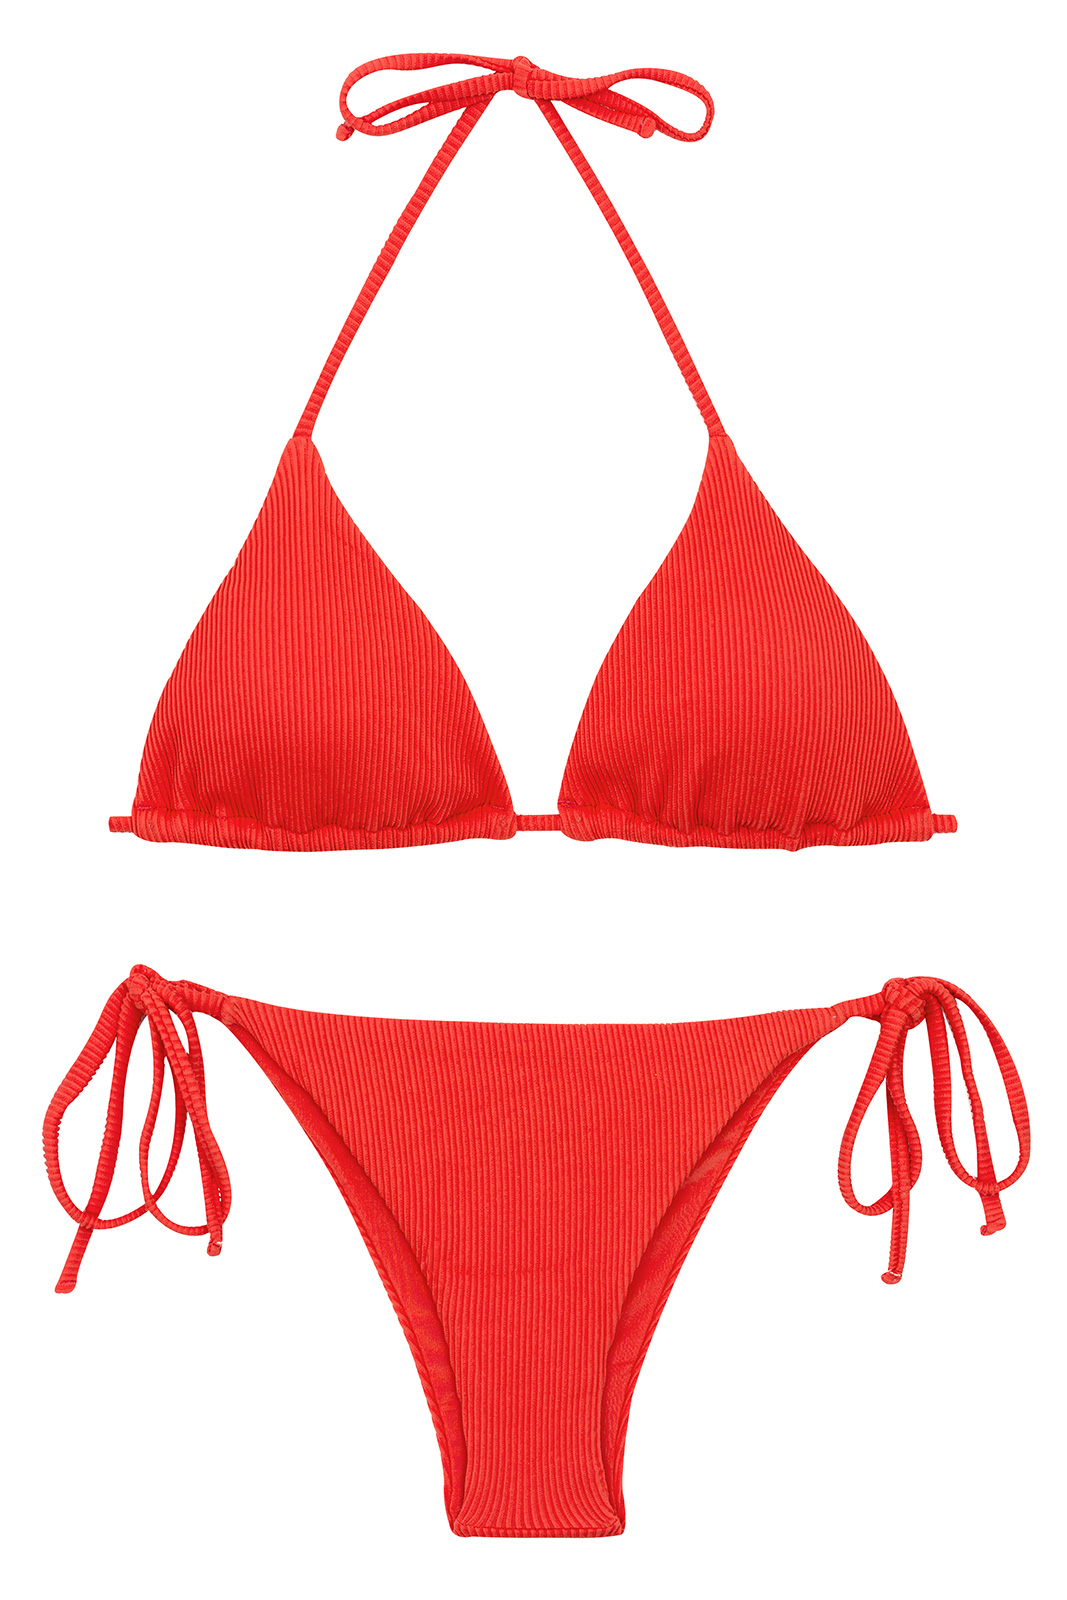 bewaker emotioneel water Red Ribbed Side-tied Brazilian Bikini - Set Cotele-tomate Tri-inv Ibiza -  Rio de Sol